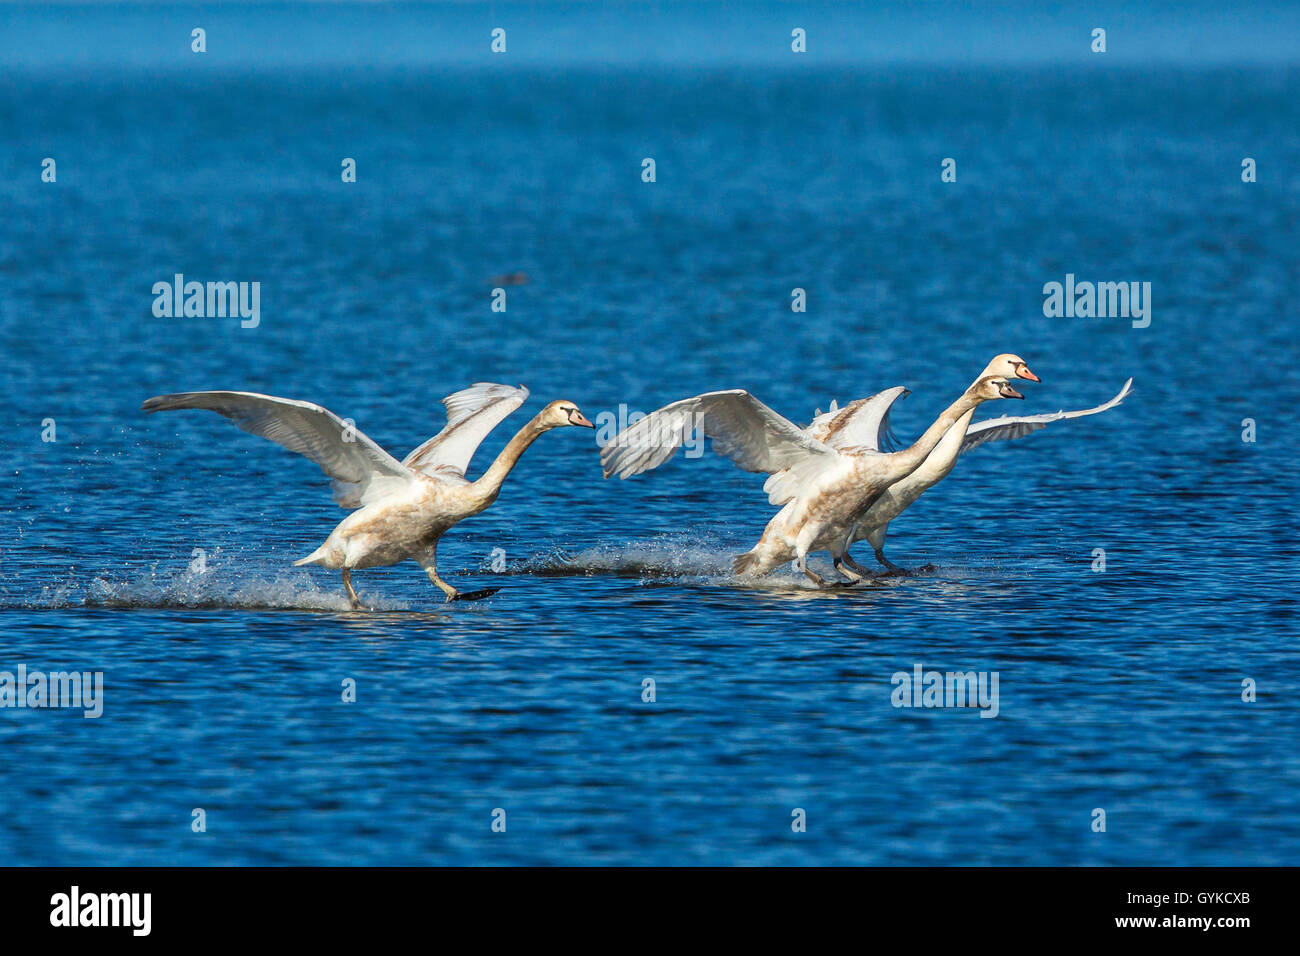 Cisne (Cygnus olor), tres cisnes silencio deslizándose en el aterrizaje sobre el agua, Alemania, Baviera, el lago Chiemsee Foto de stock